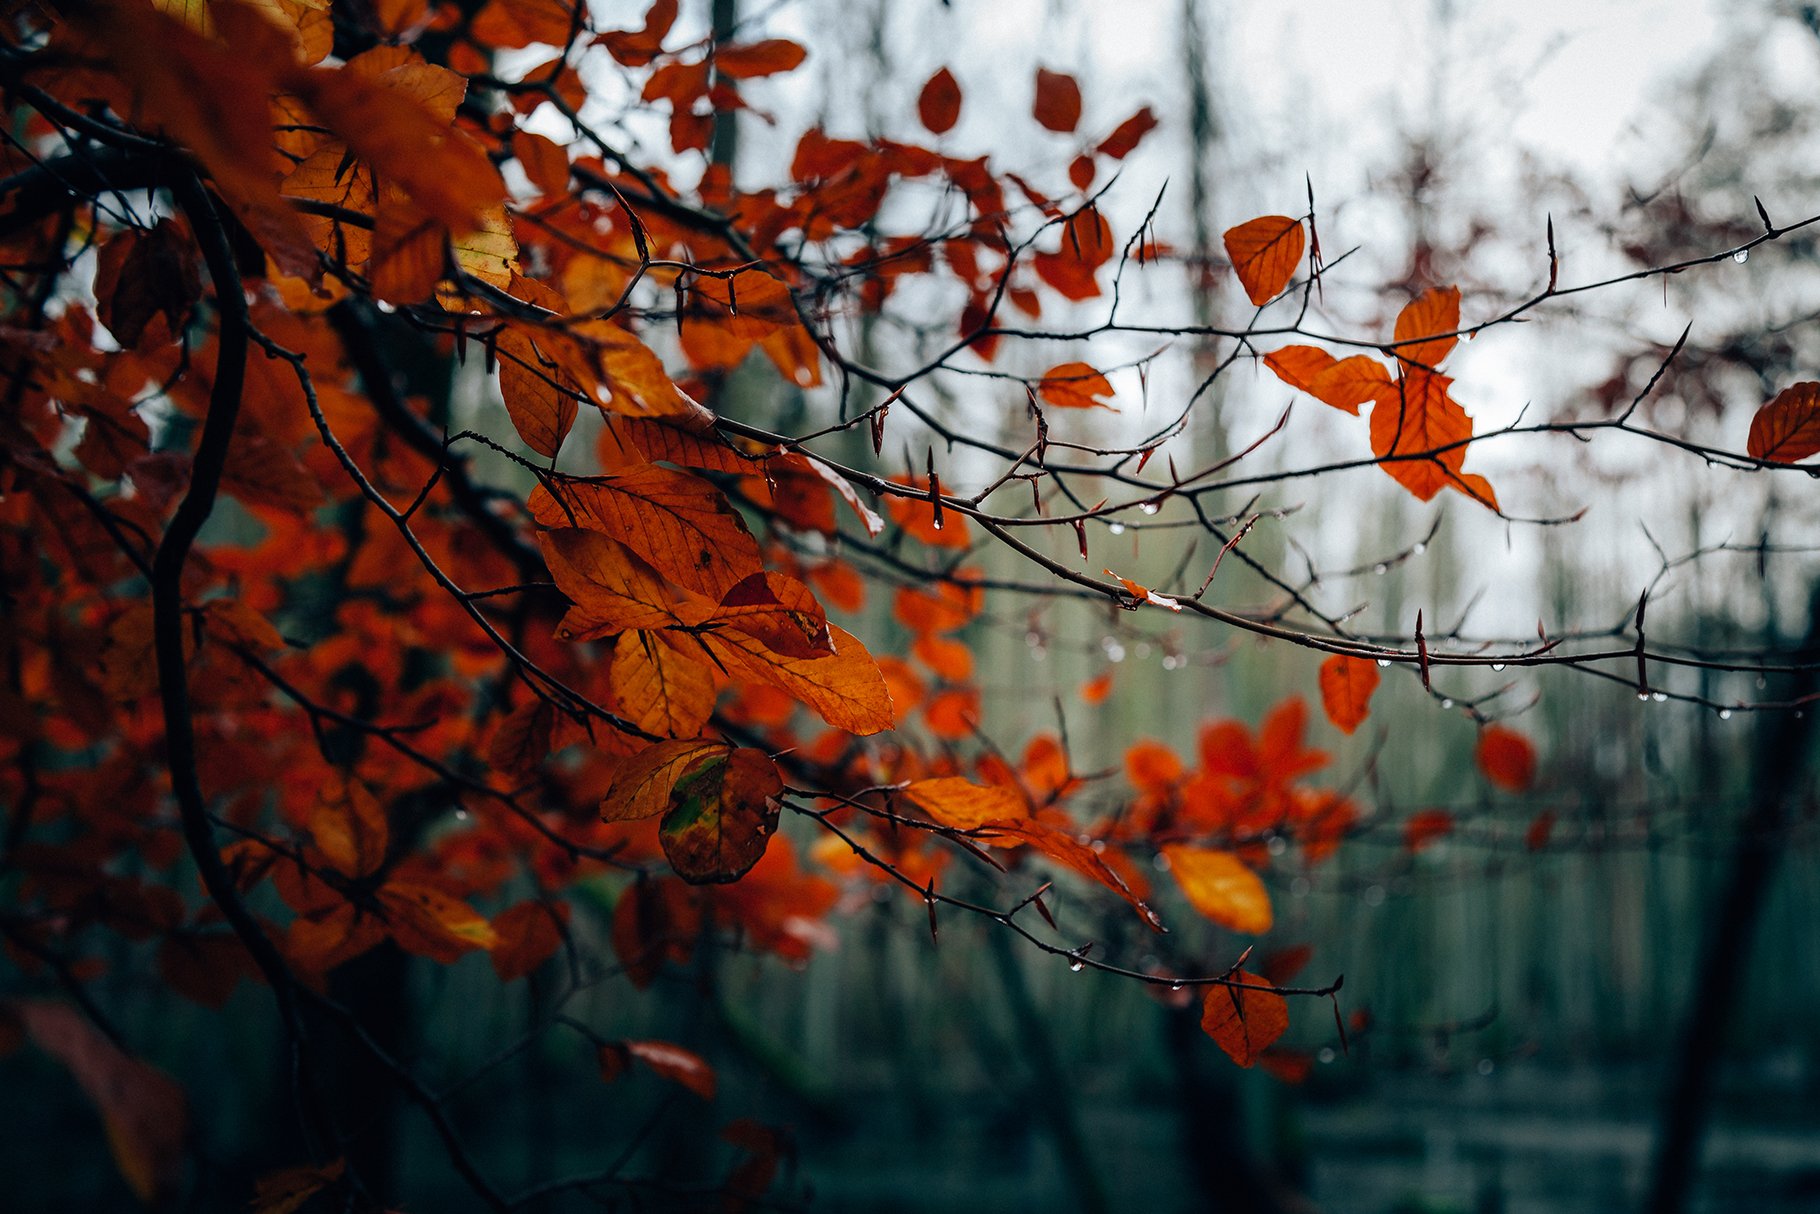 100+ New Hi-Res Autumn Backgrounds - Design Cuts